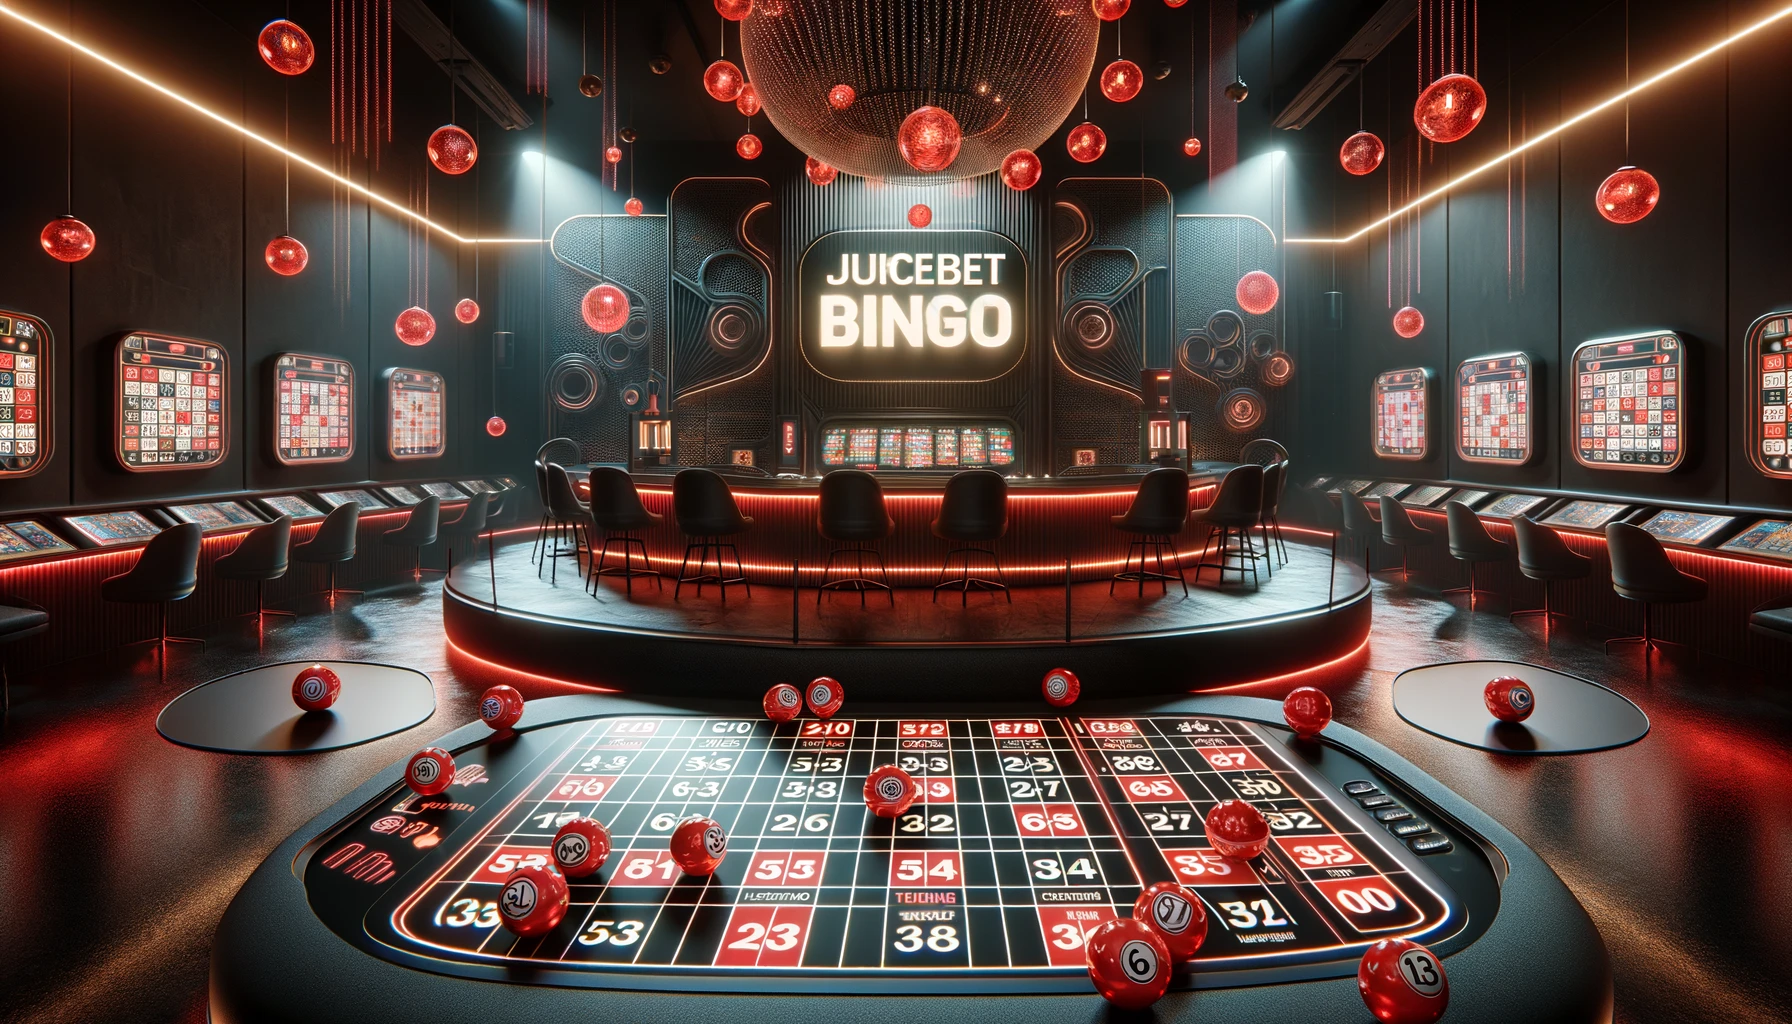 Juicebet bingo games 2